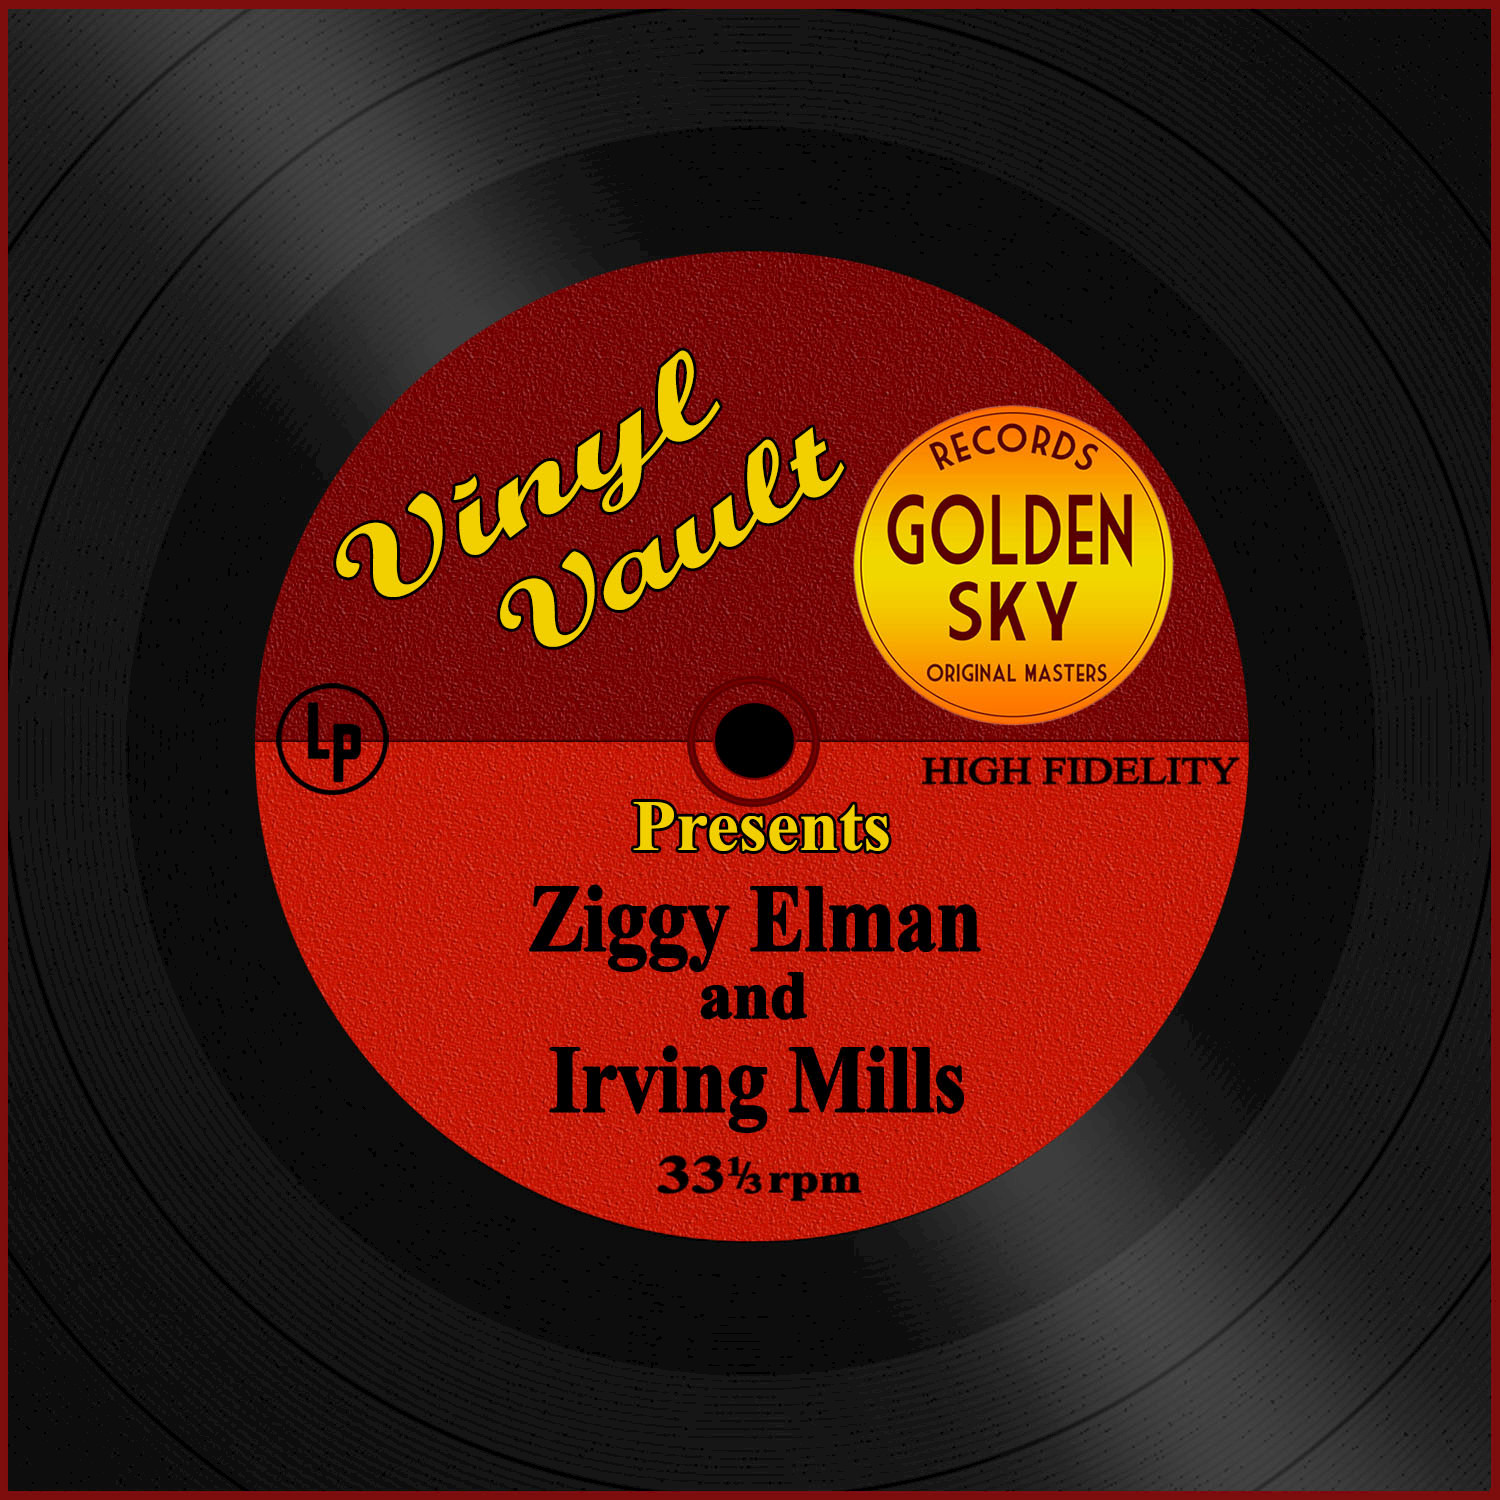 Vinyl Vault Presents Ziggy Elman and Irving Mills